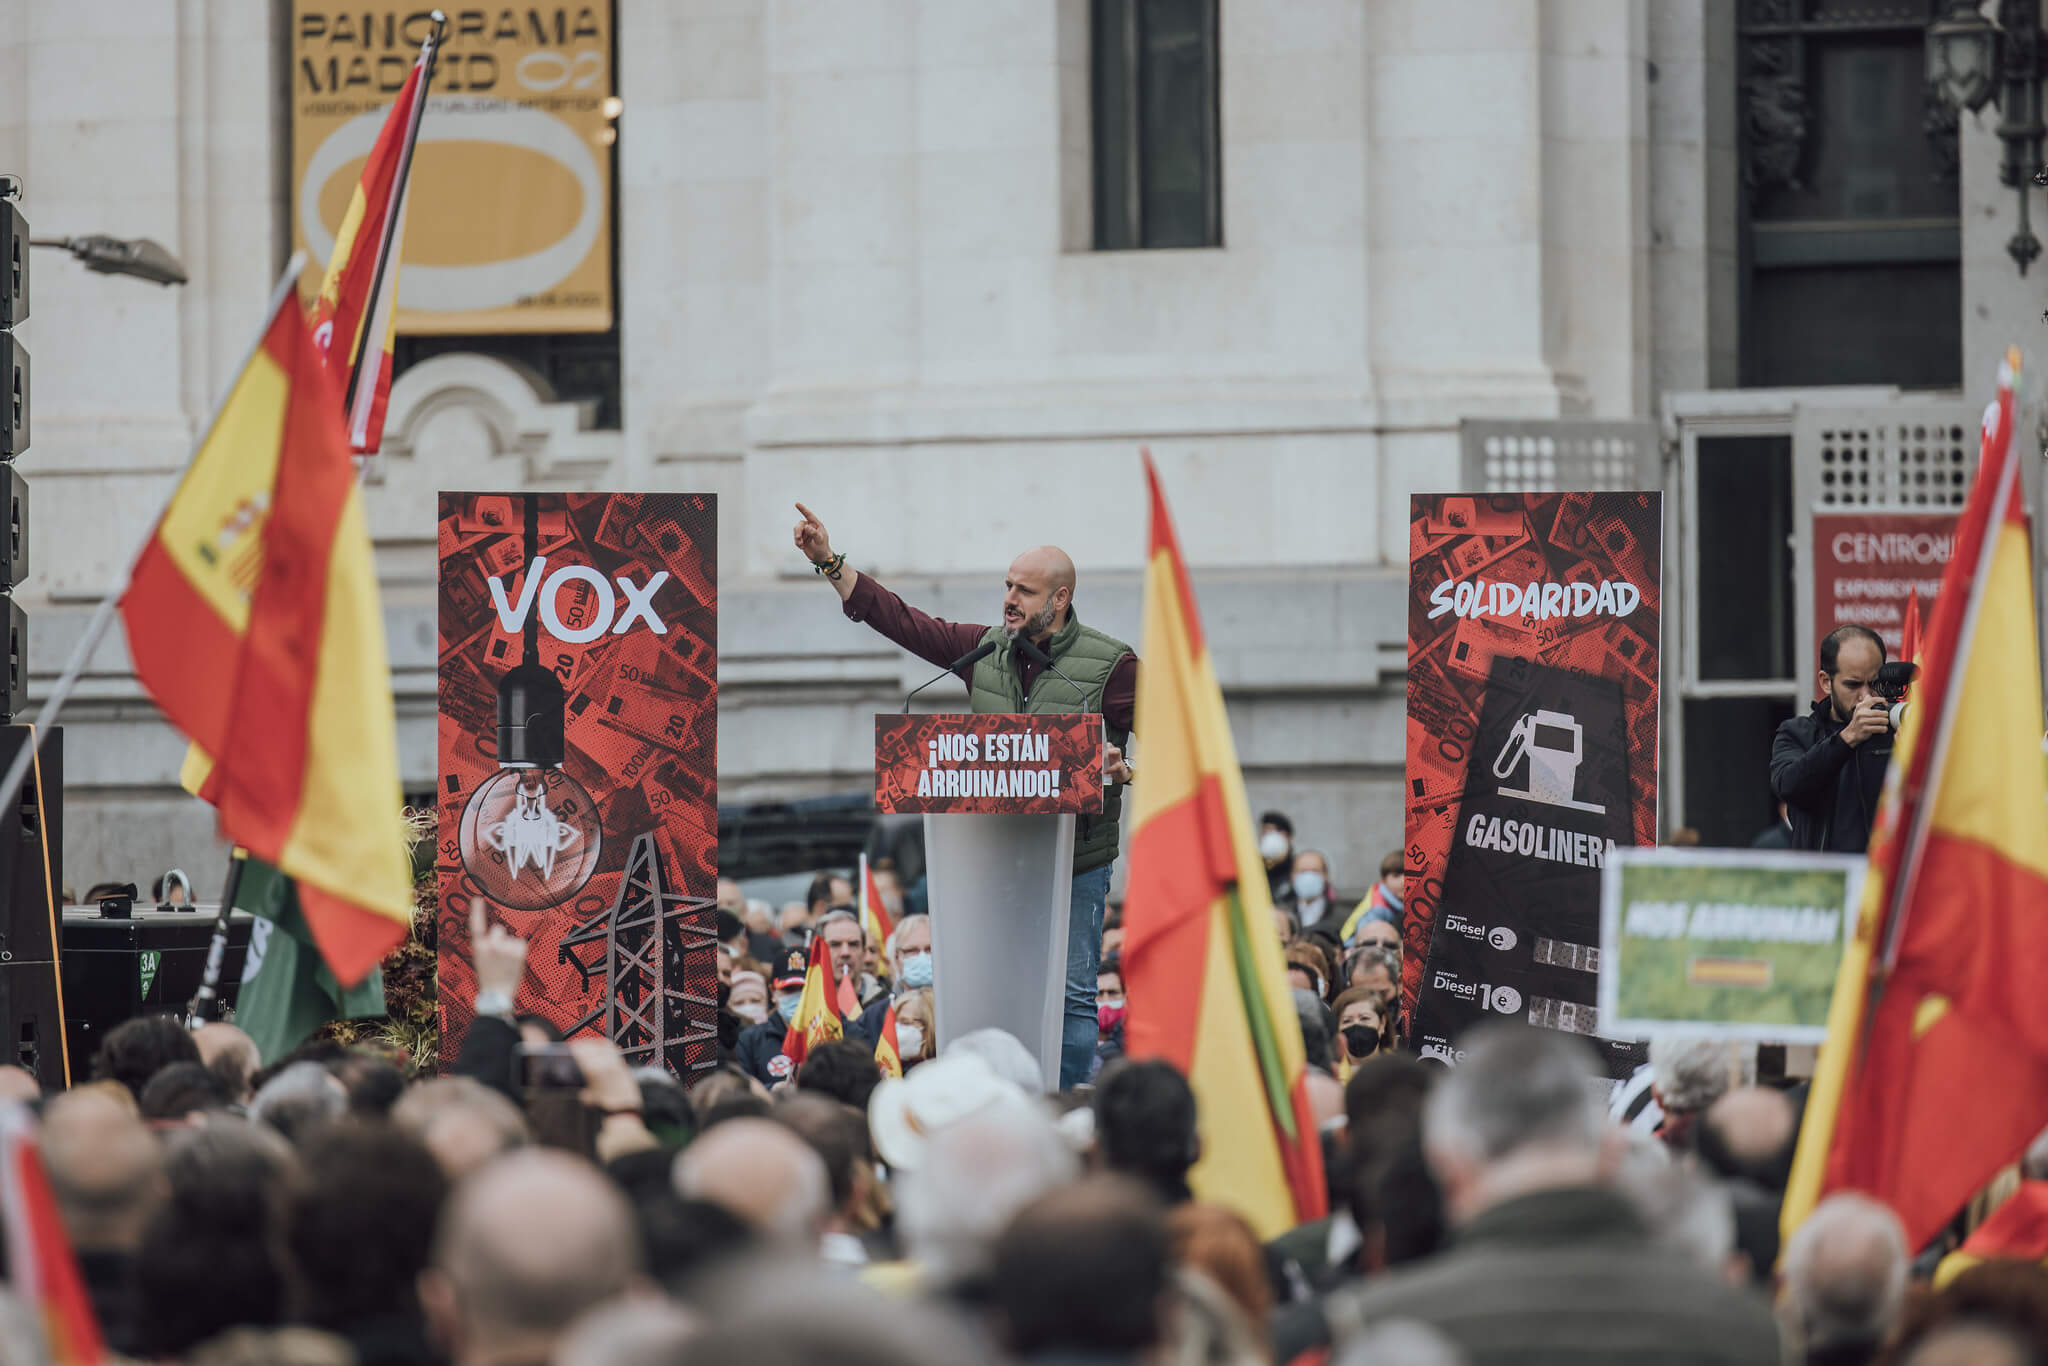 Vox nativist rhetoric and ukrainian refugees banner